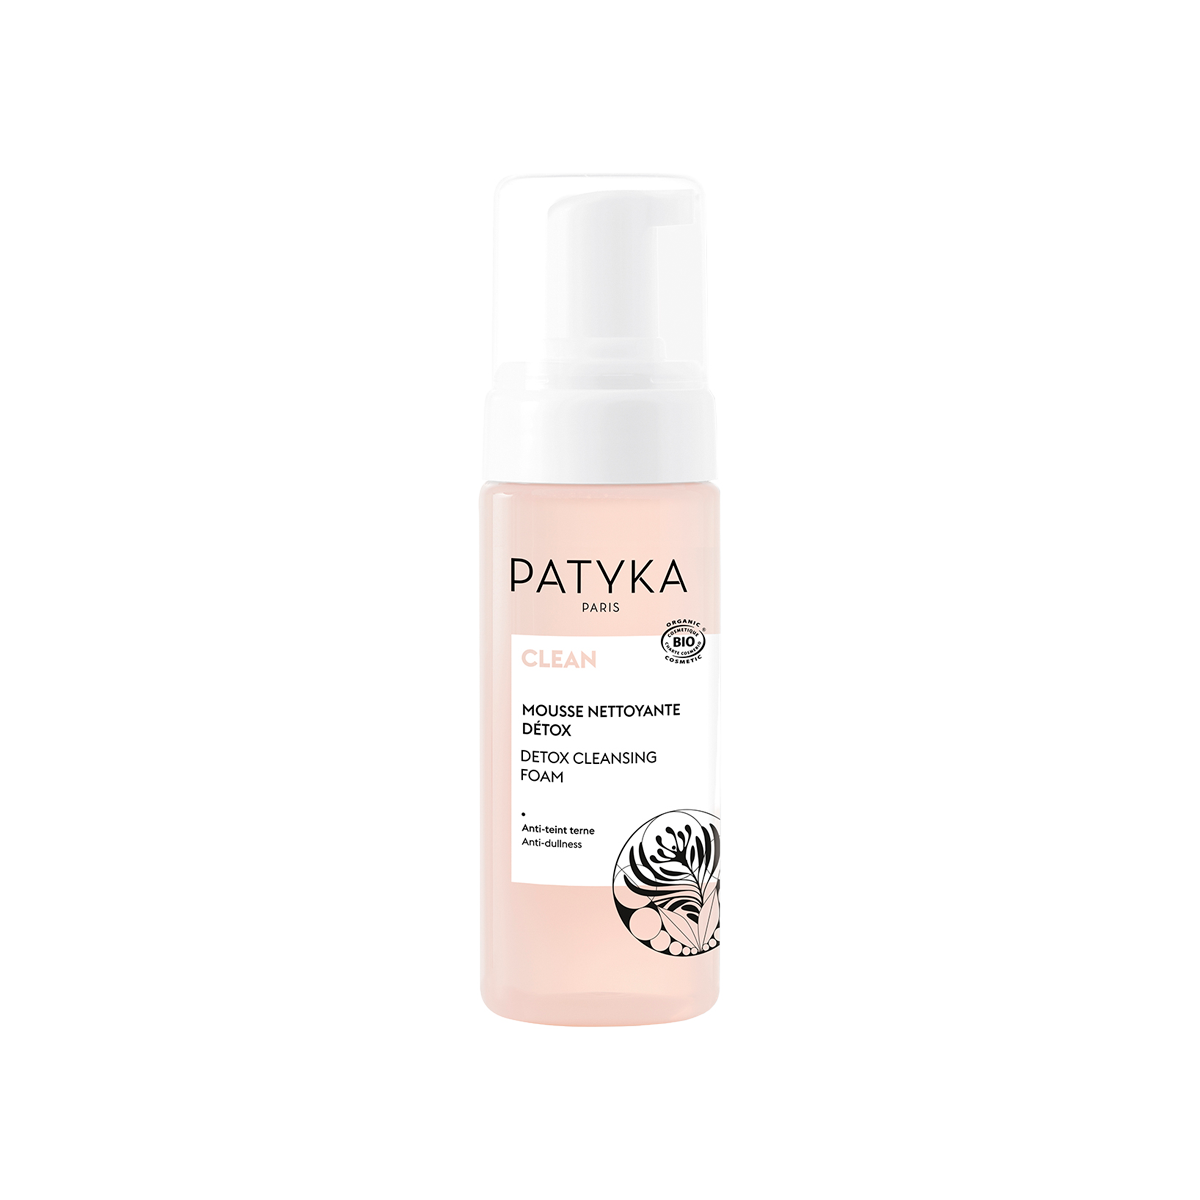 Patyka - Detox Cleansing Foam